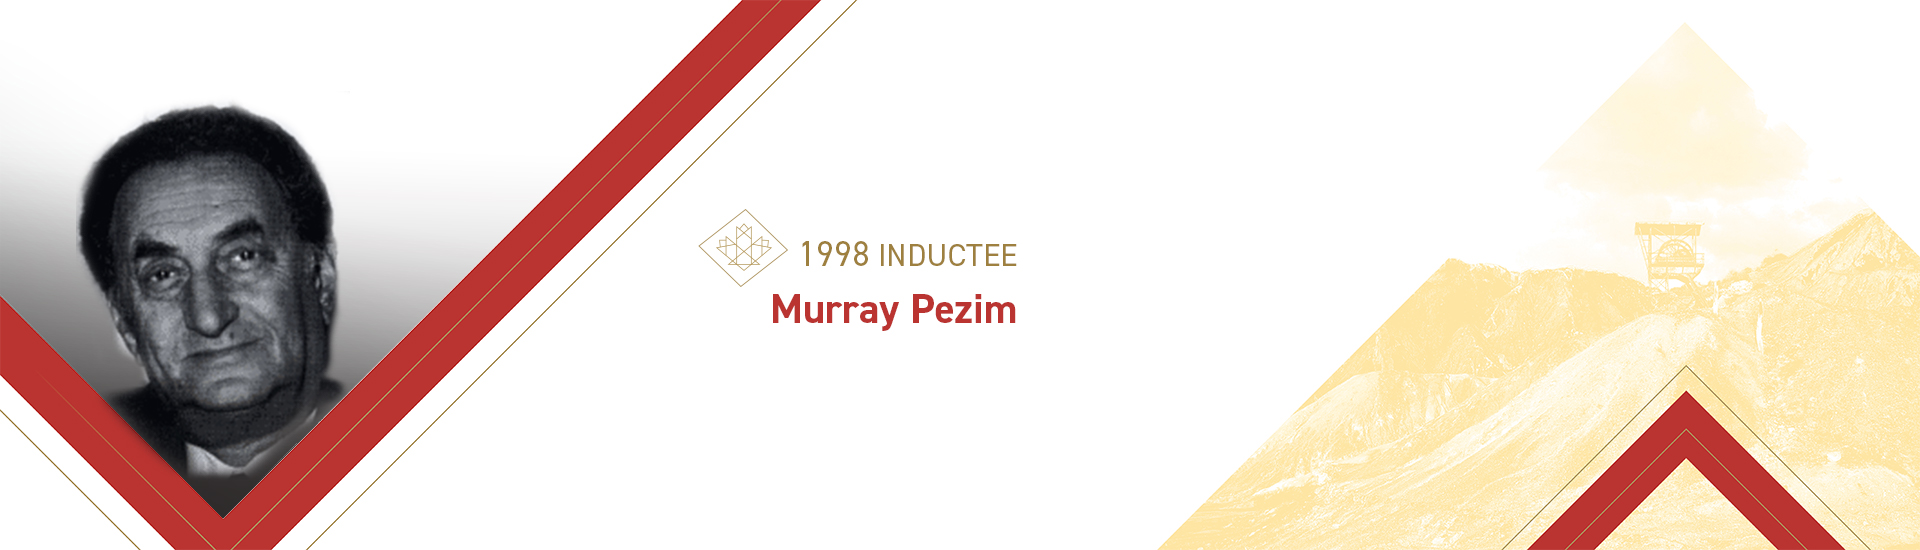 Murray Pezim (1921-1998)